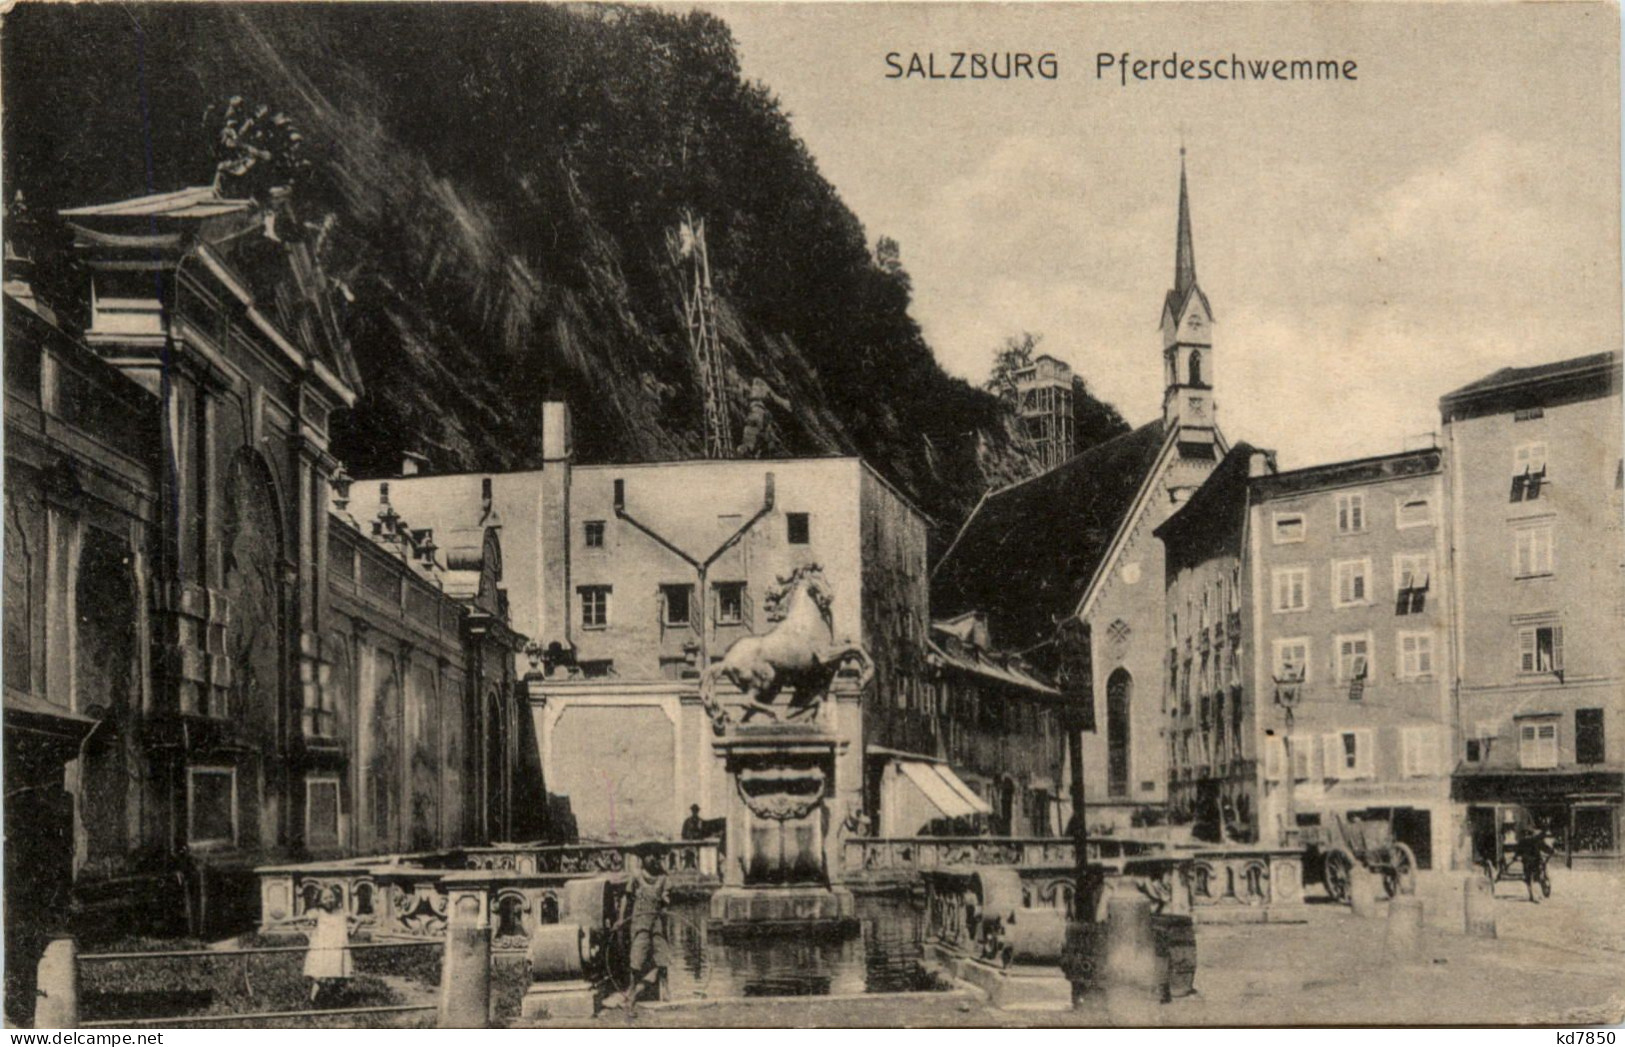 Salzburg - Pferdeschwemme - Salzburg Stadt